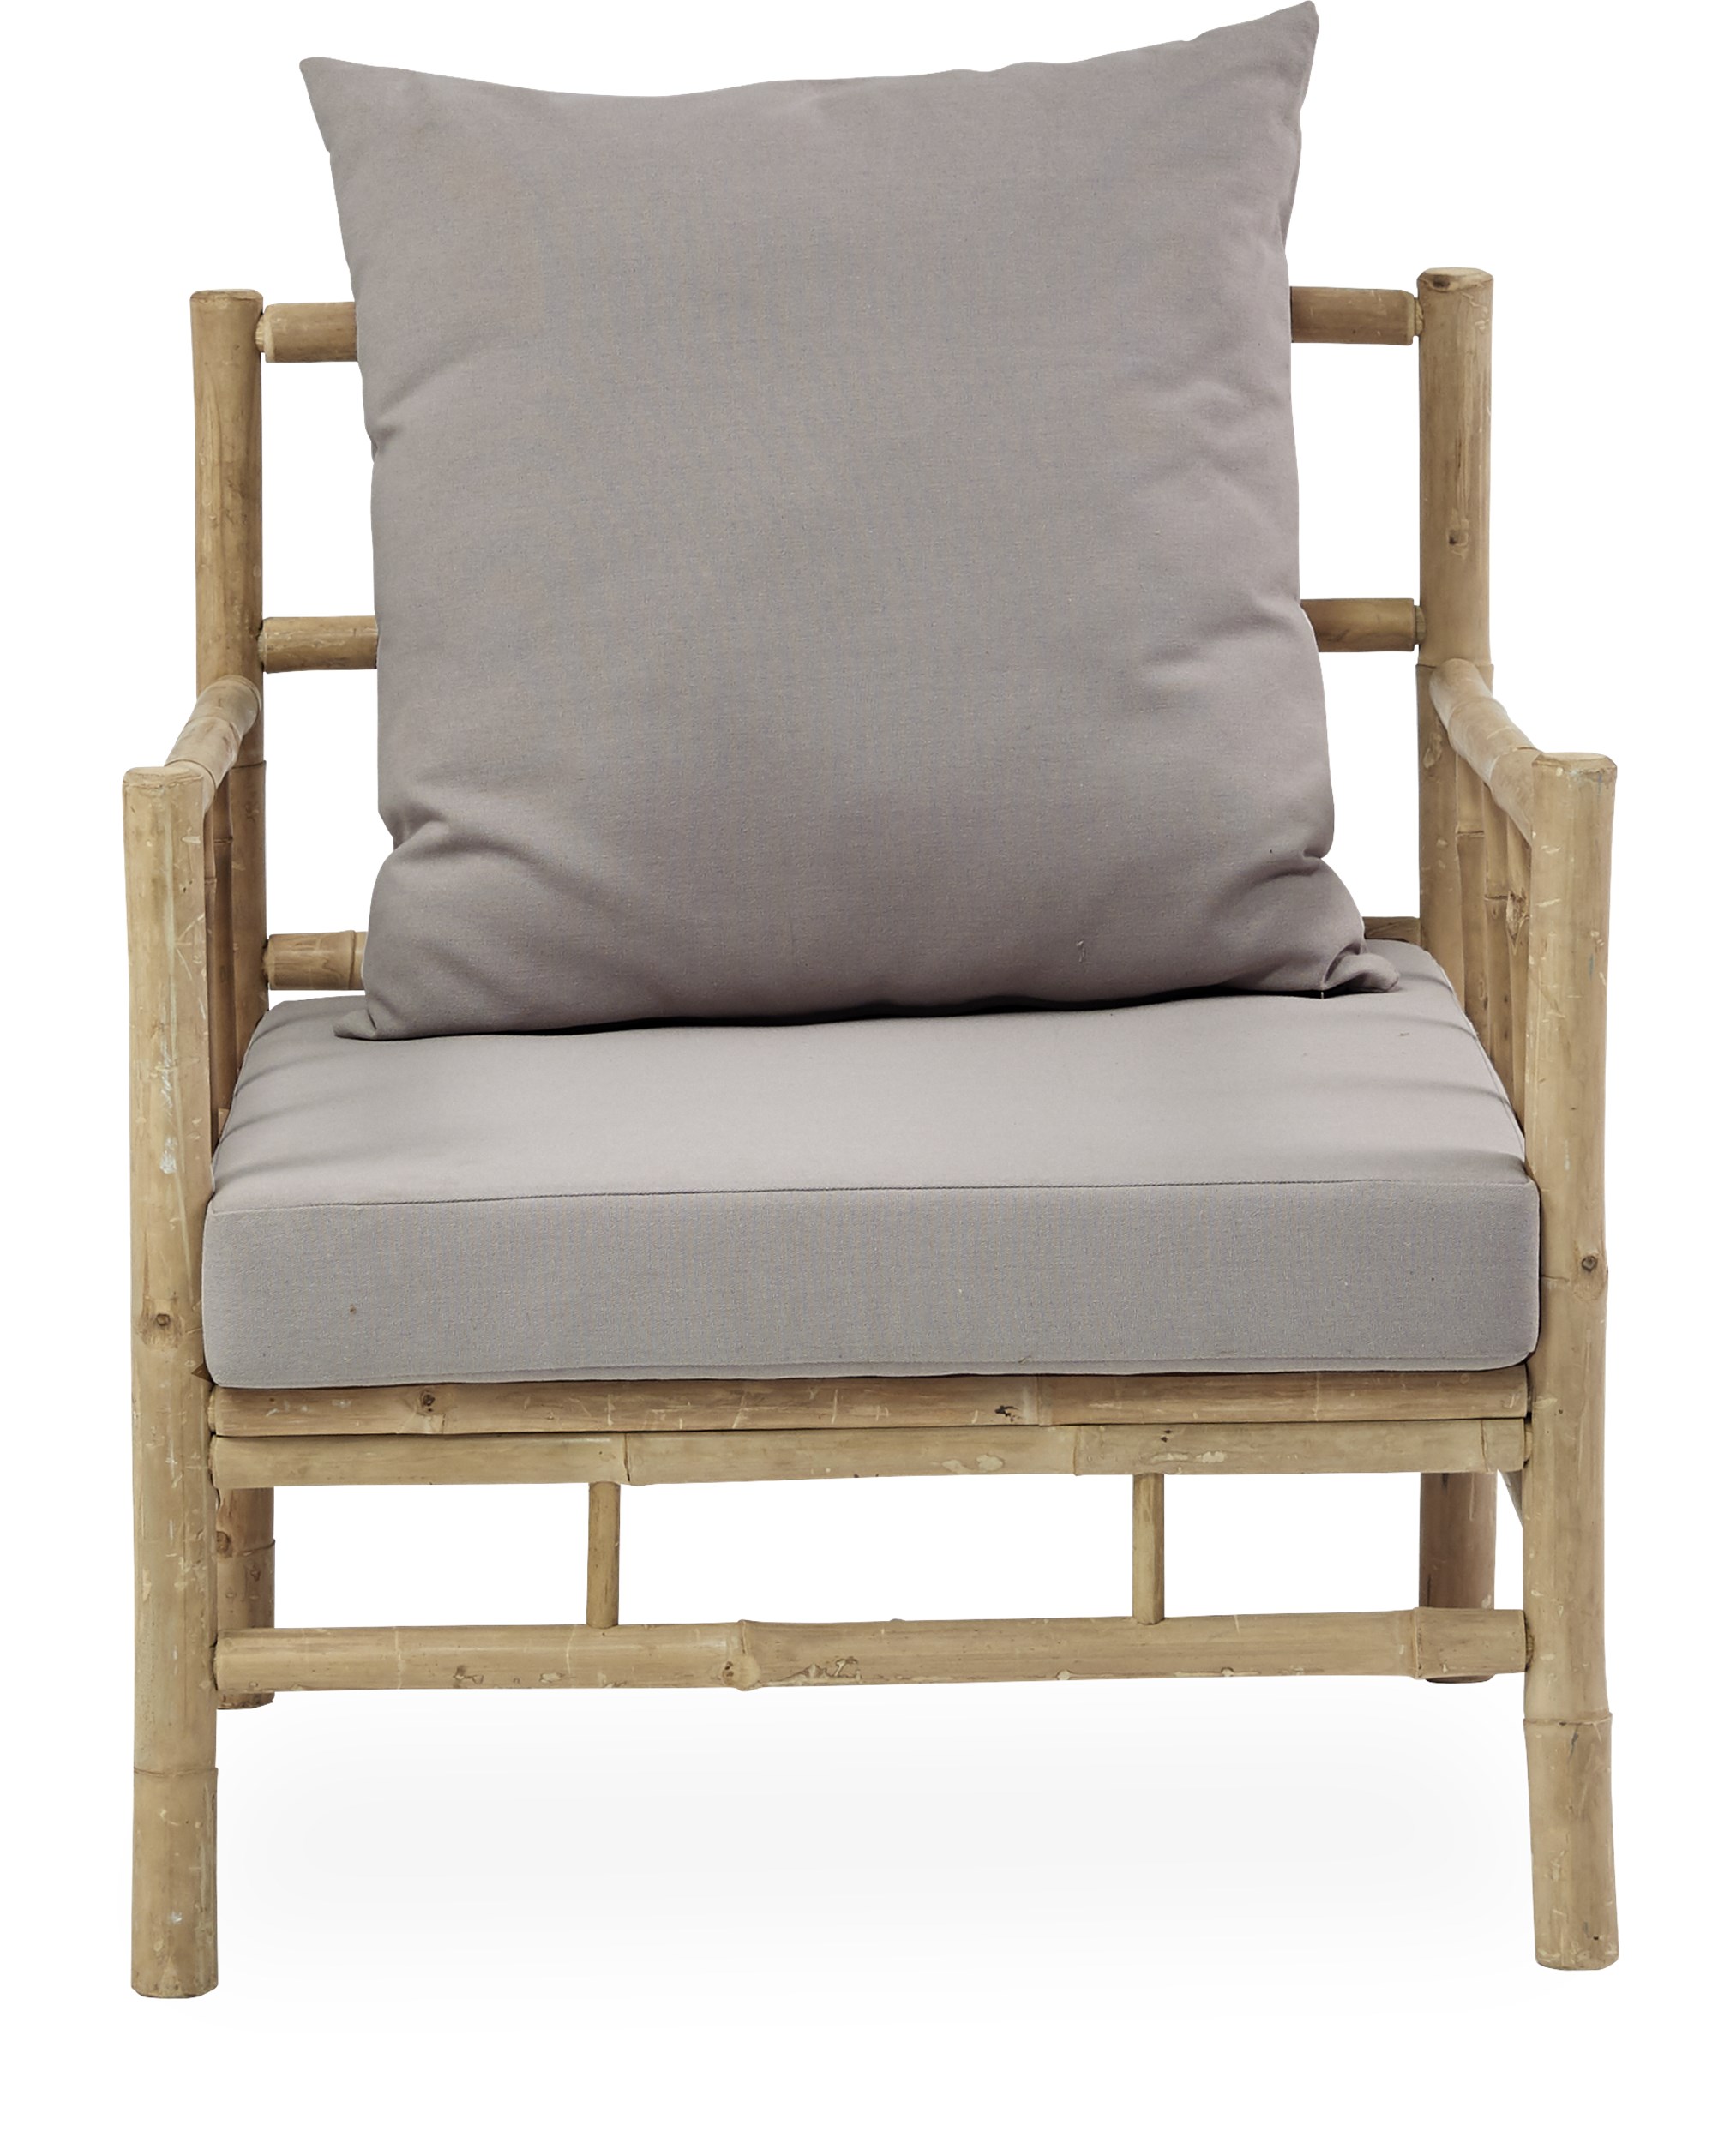 Halong Lounge vilostol - Bambu, dyna i naturfärgad polyester och kudde i naturfärgad polyester